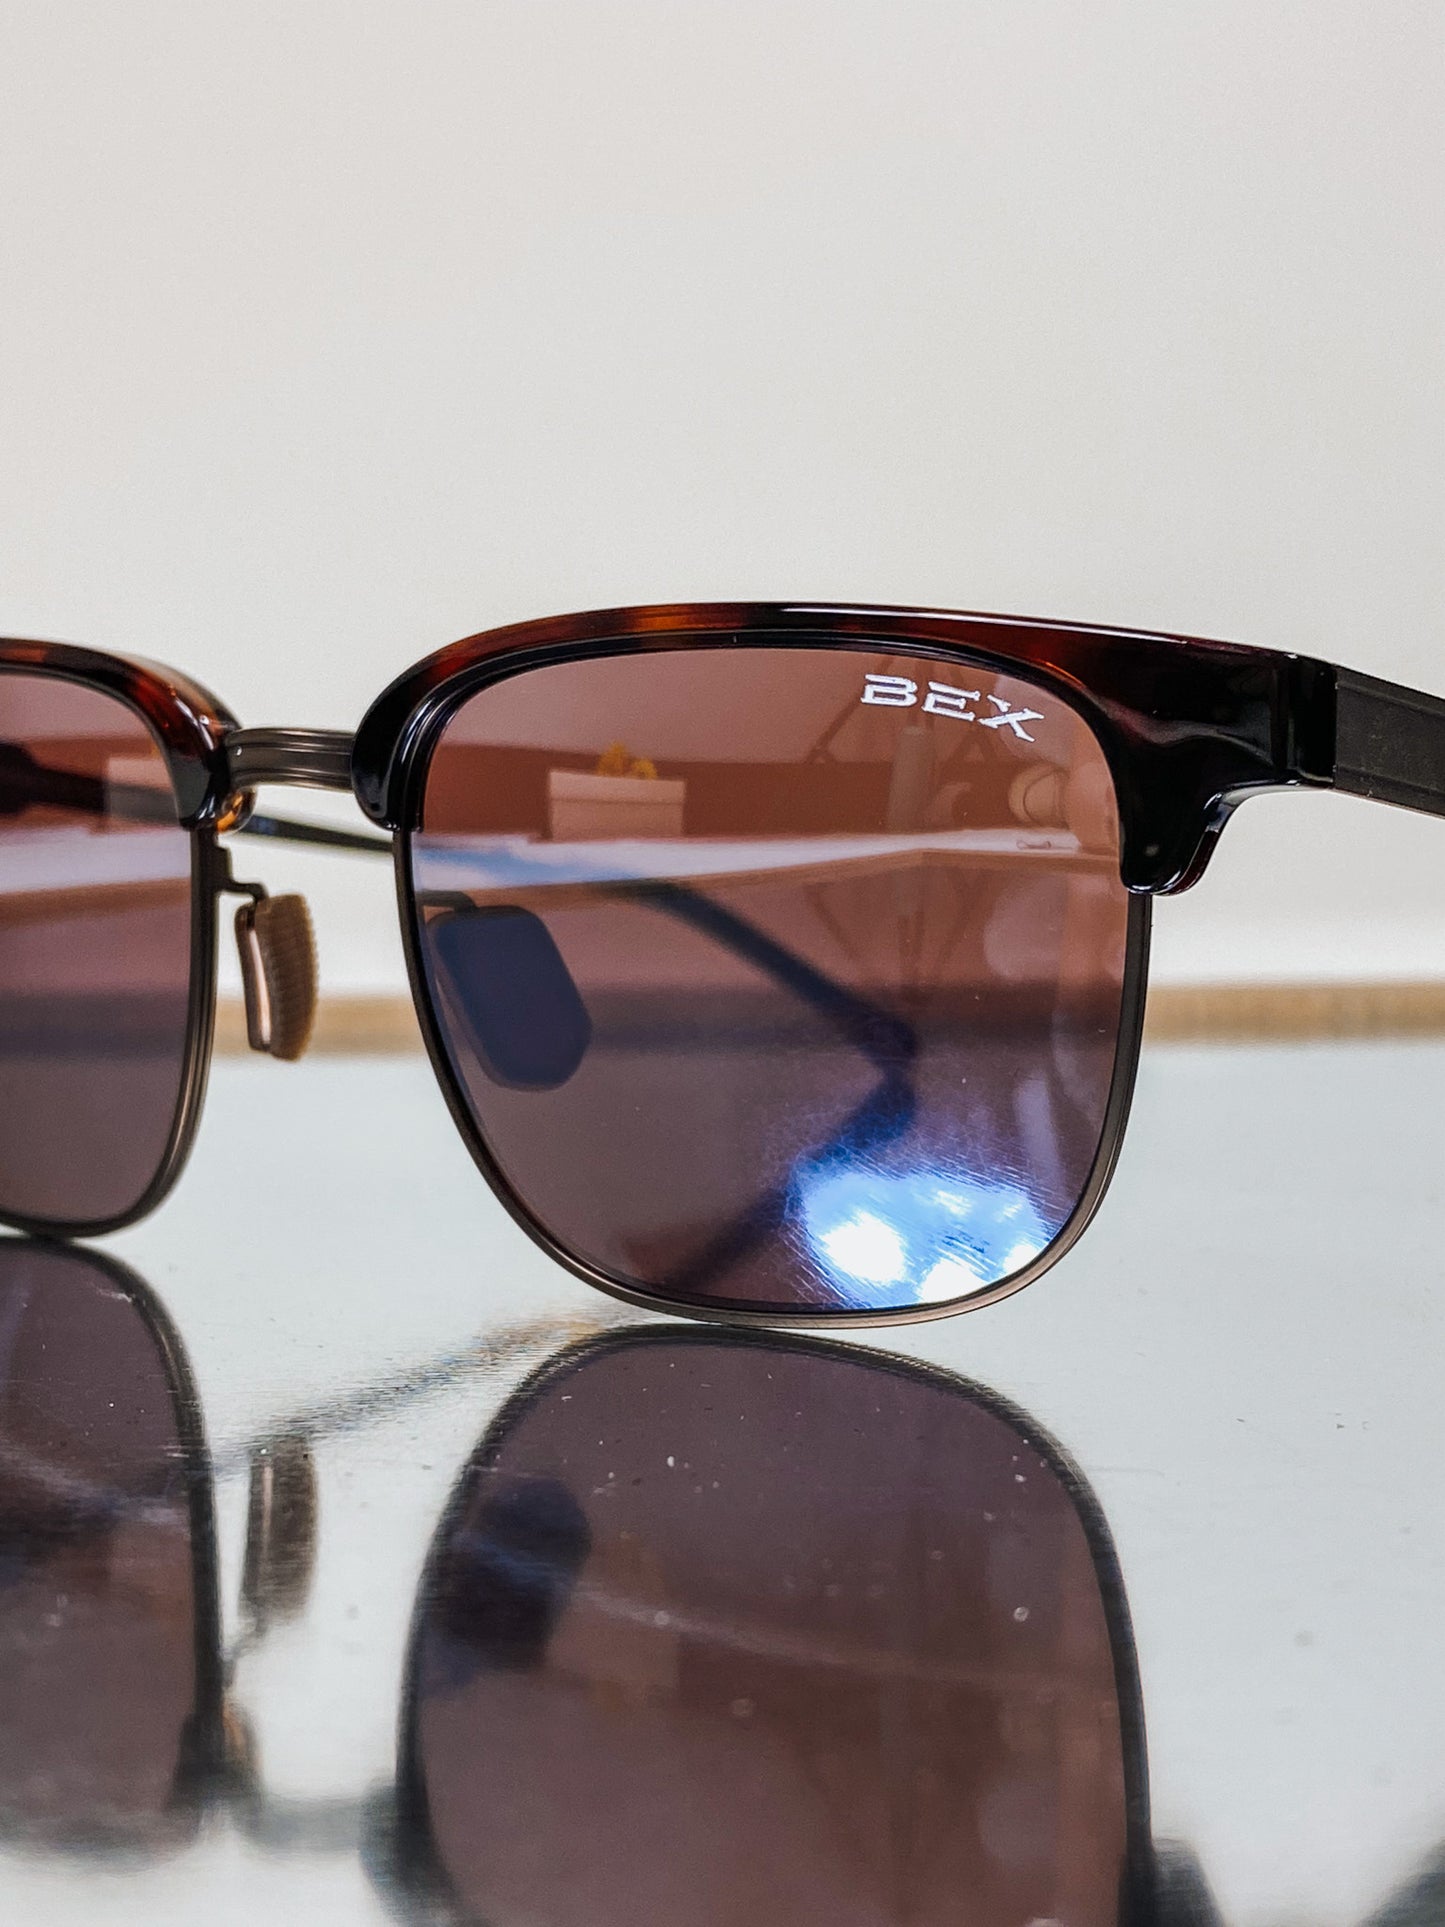 Roger Tortoise Brown Sunglasses